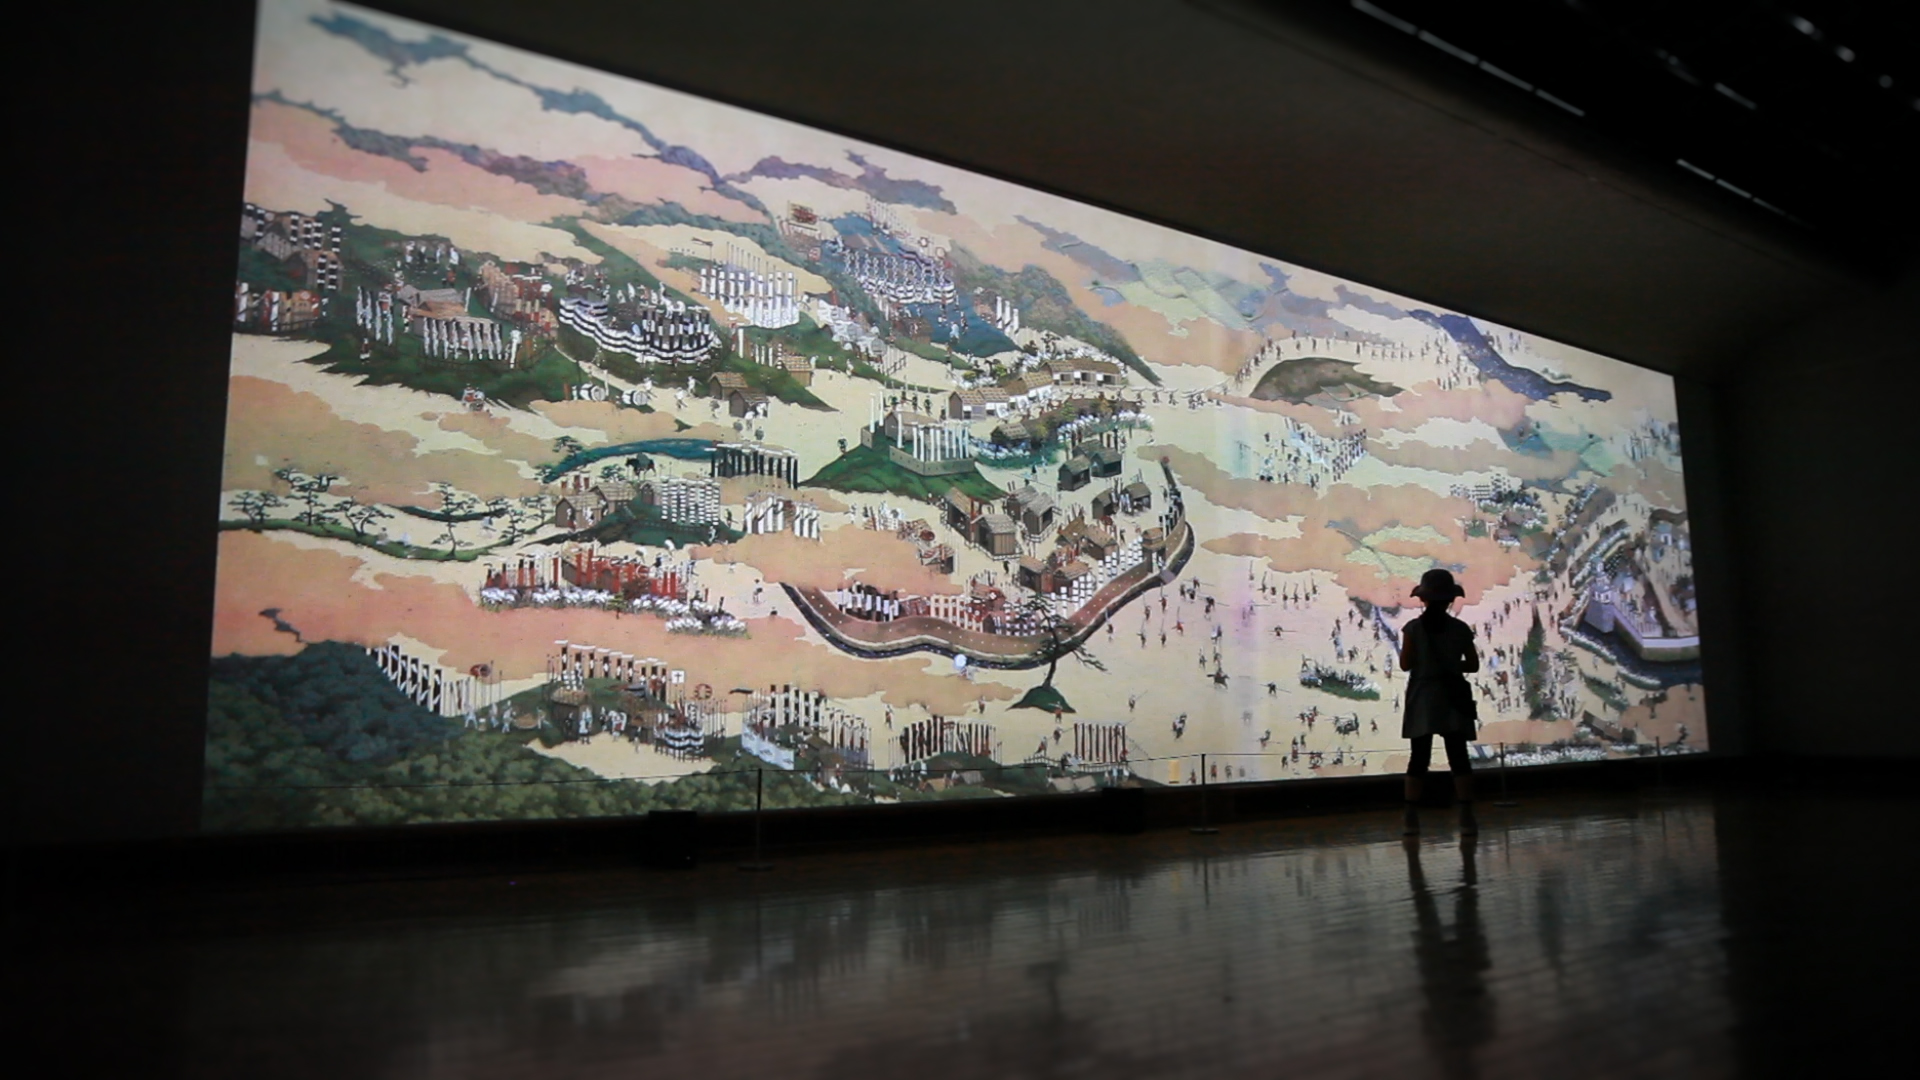 関ケ原山水図屏風 / Sekigahara-Sansui-zu-Byobu (Folding Screen of Painted Sekigahara Landscapes)